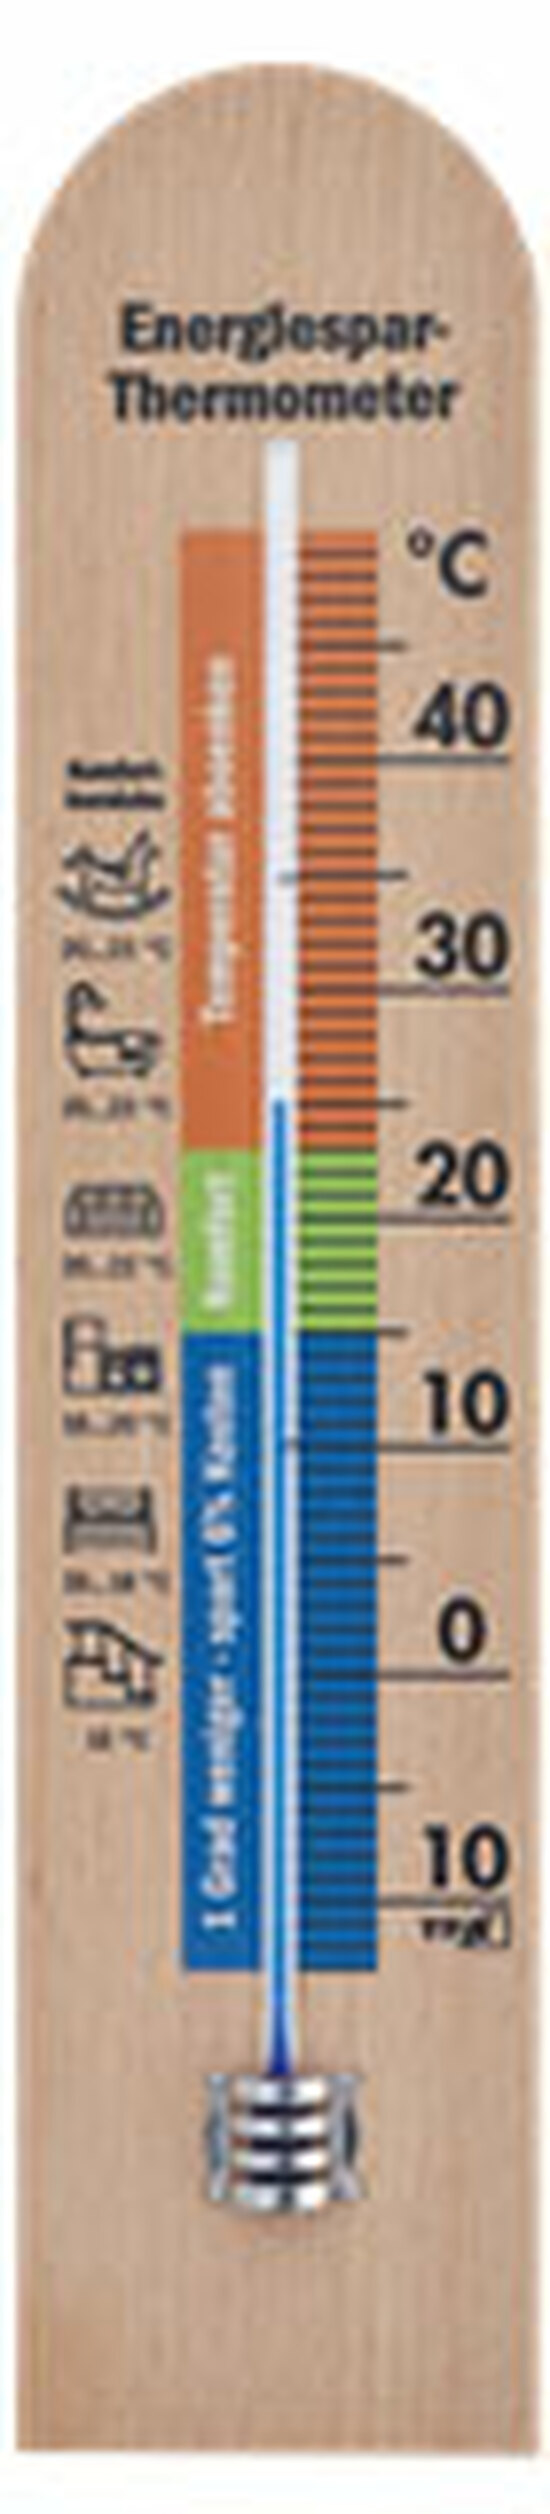 Energiesparthermometer aus Buche